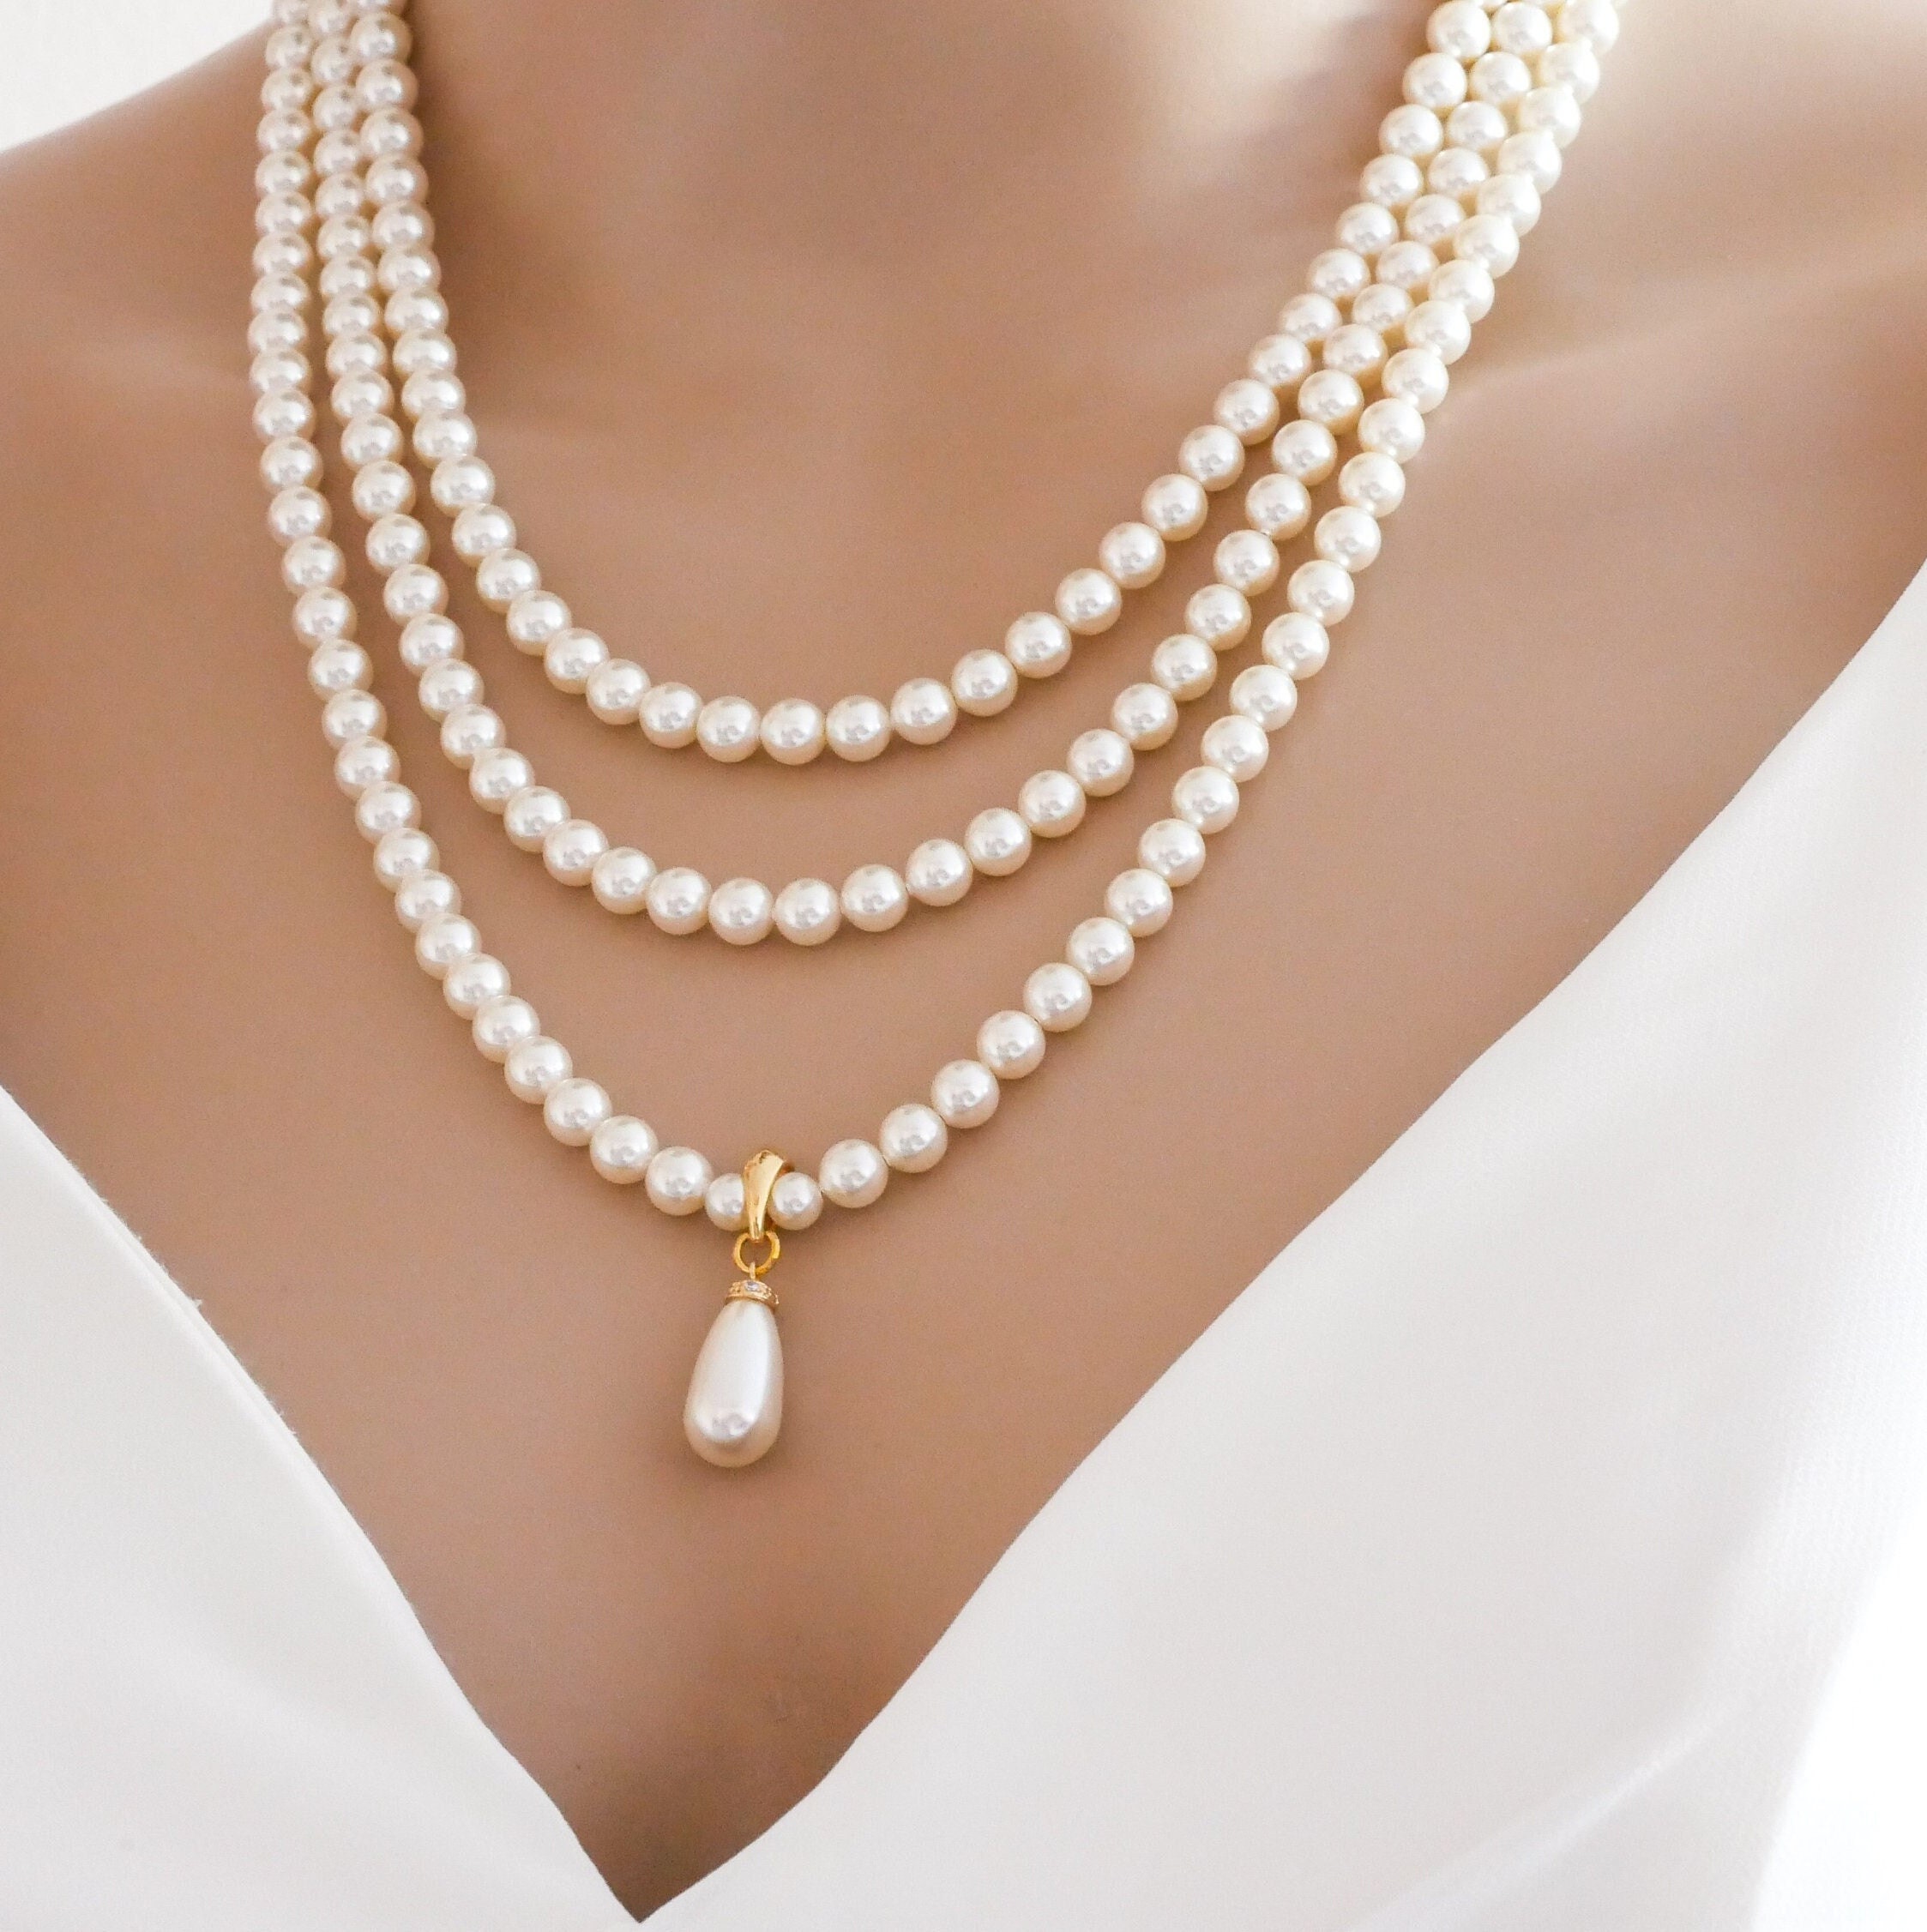 Victoria 3-Row Vintage Pearl Necklace – Bride Savvy LLC -Your Bride Box